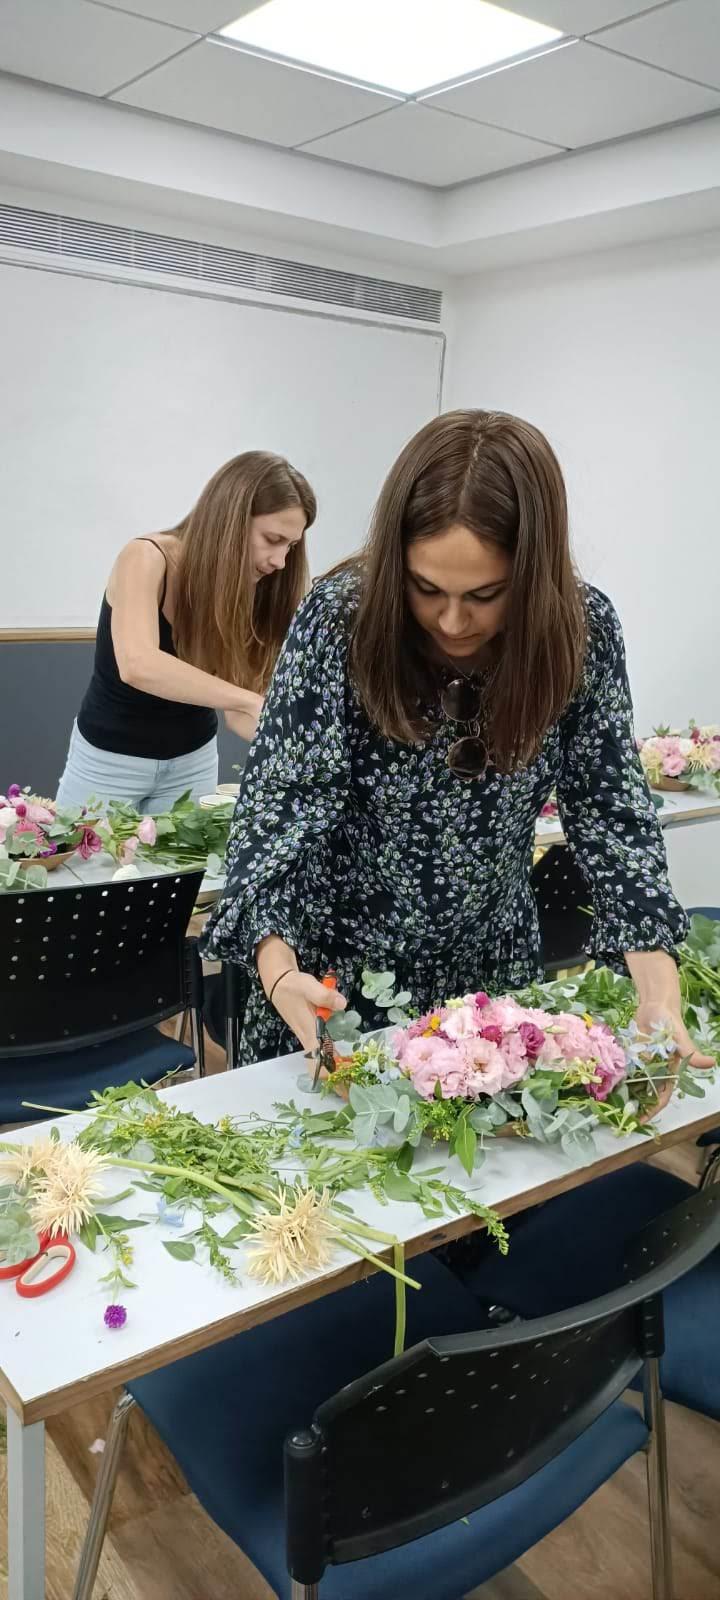 גלרייה - סדנת עיצוב פרחים - קורס ניהול, עיצוב והפקת אירועים מחזור 30 , 29 מתוך 41